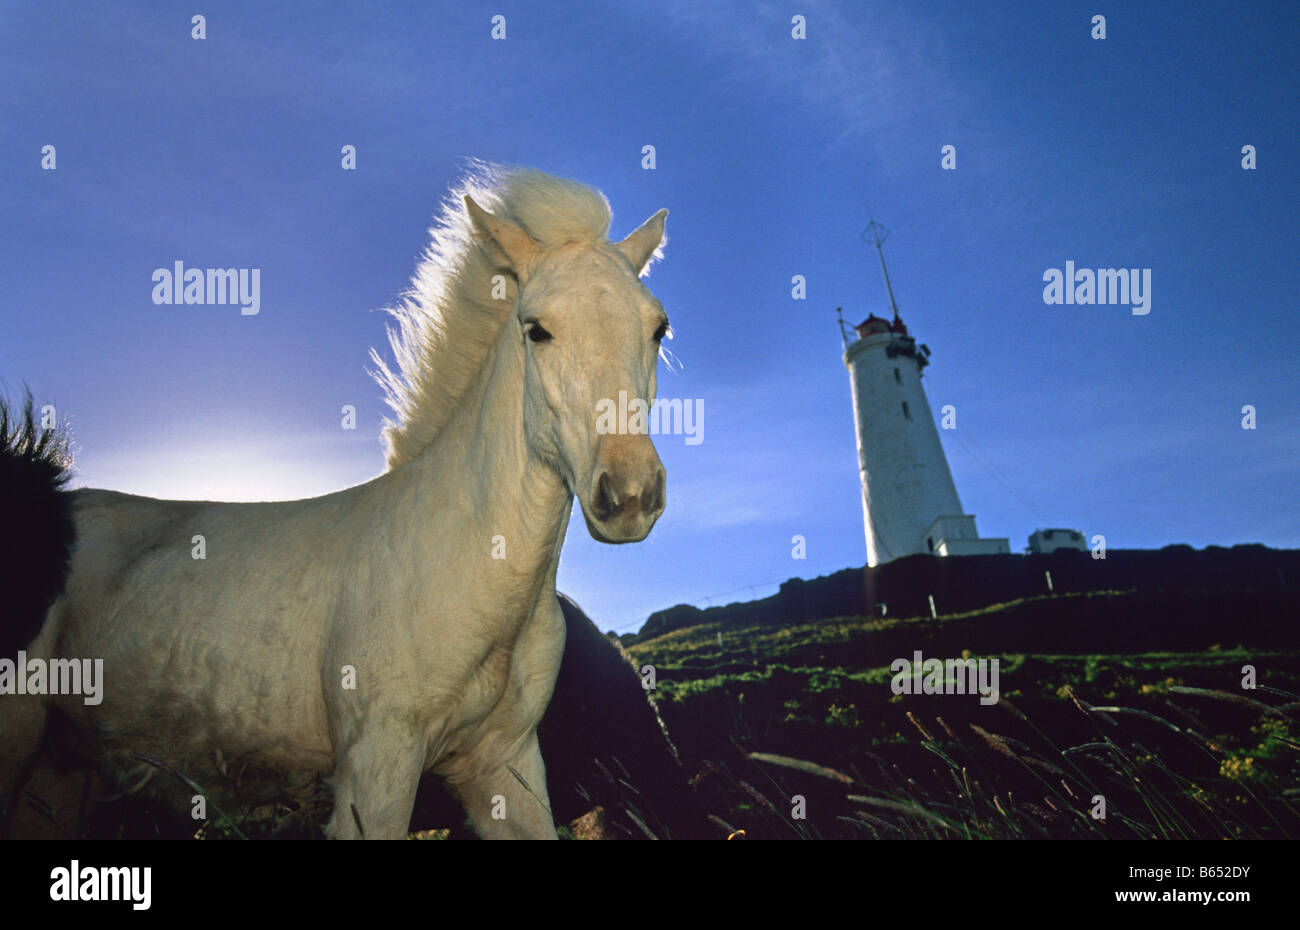 Iceland. Reykjavik. Reykjanes peninsula. Lighthouse and horse. Stock Photo